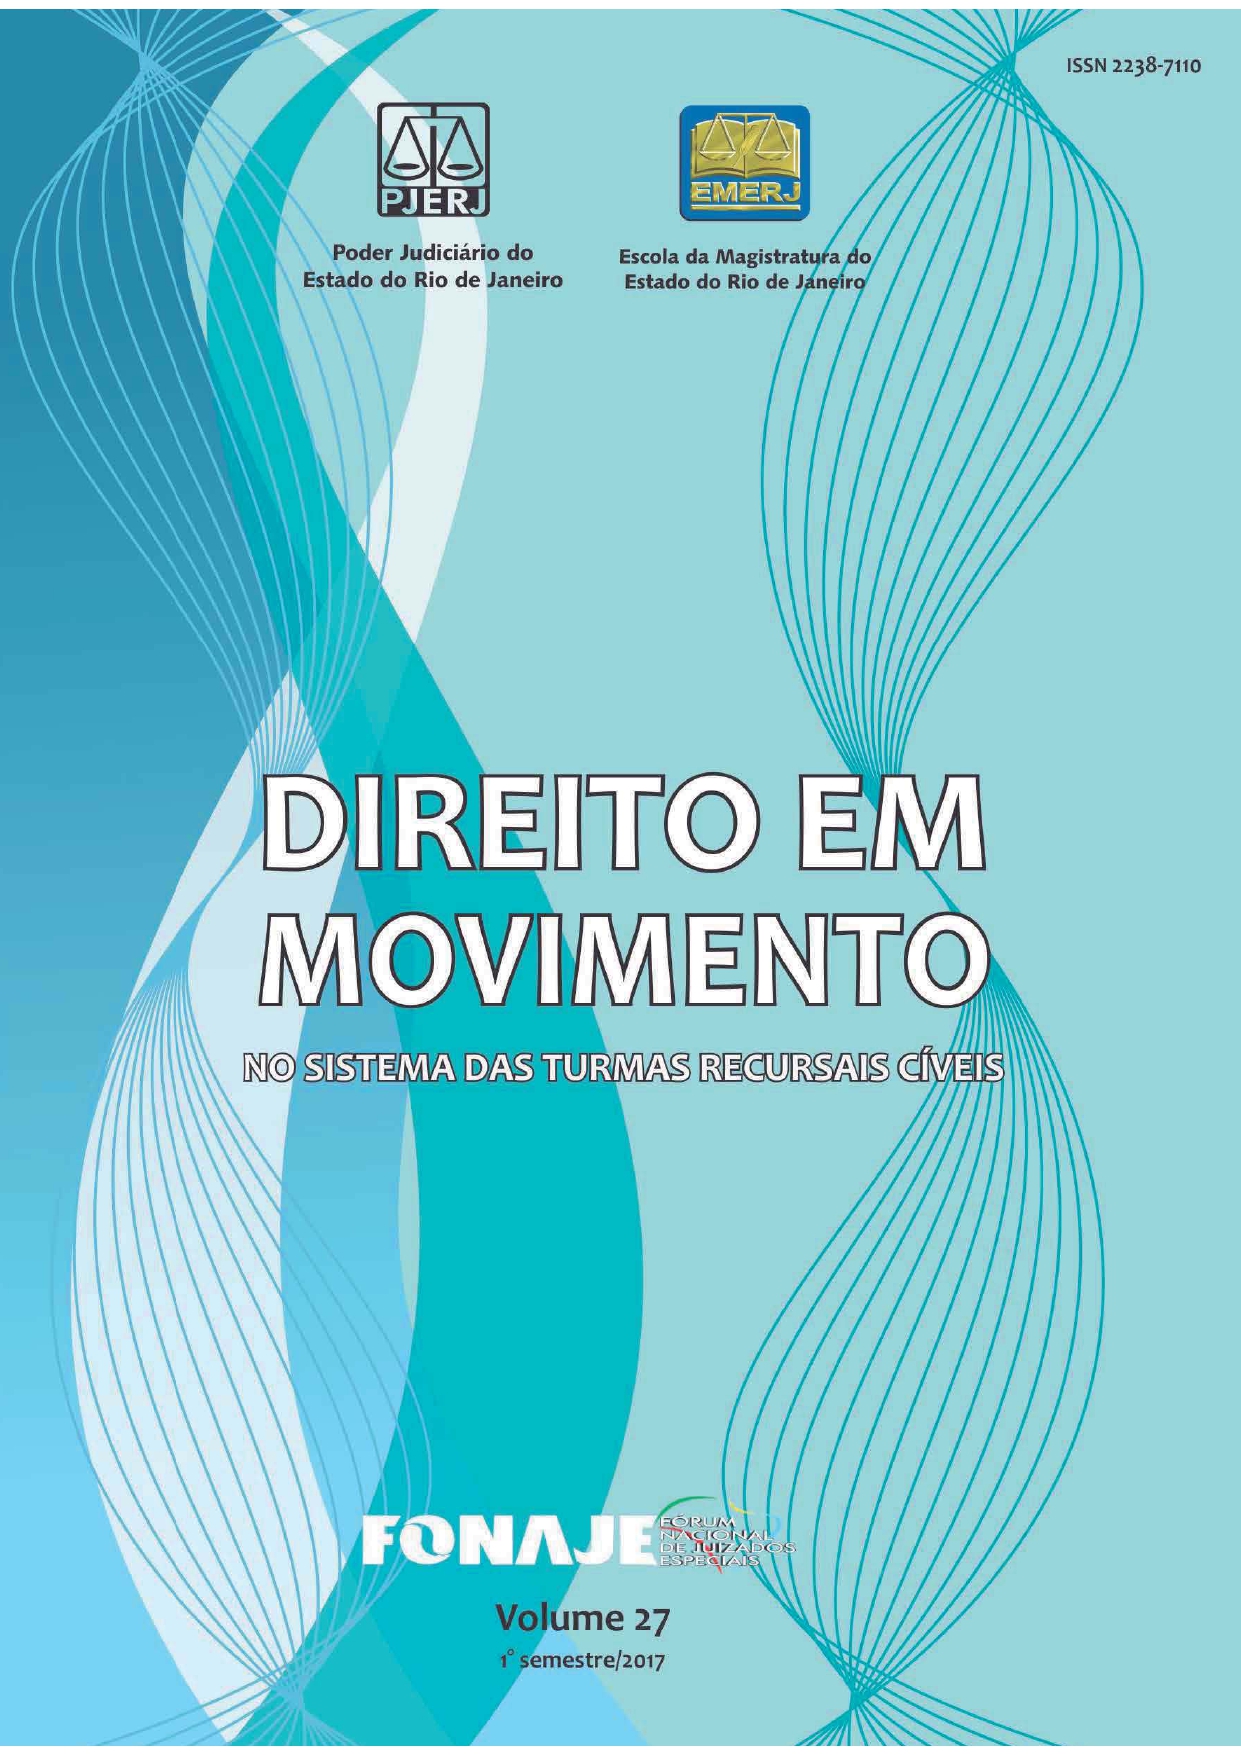 					Ver Vol. 27 (2017): Revista Direito em Movimento (Numeração antiga)
				